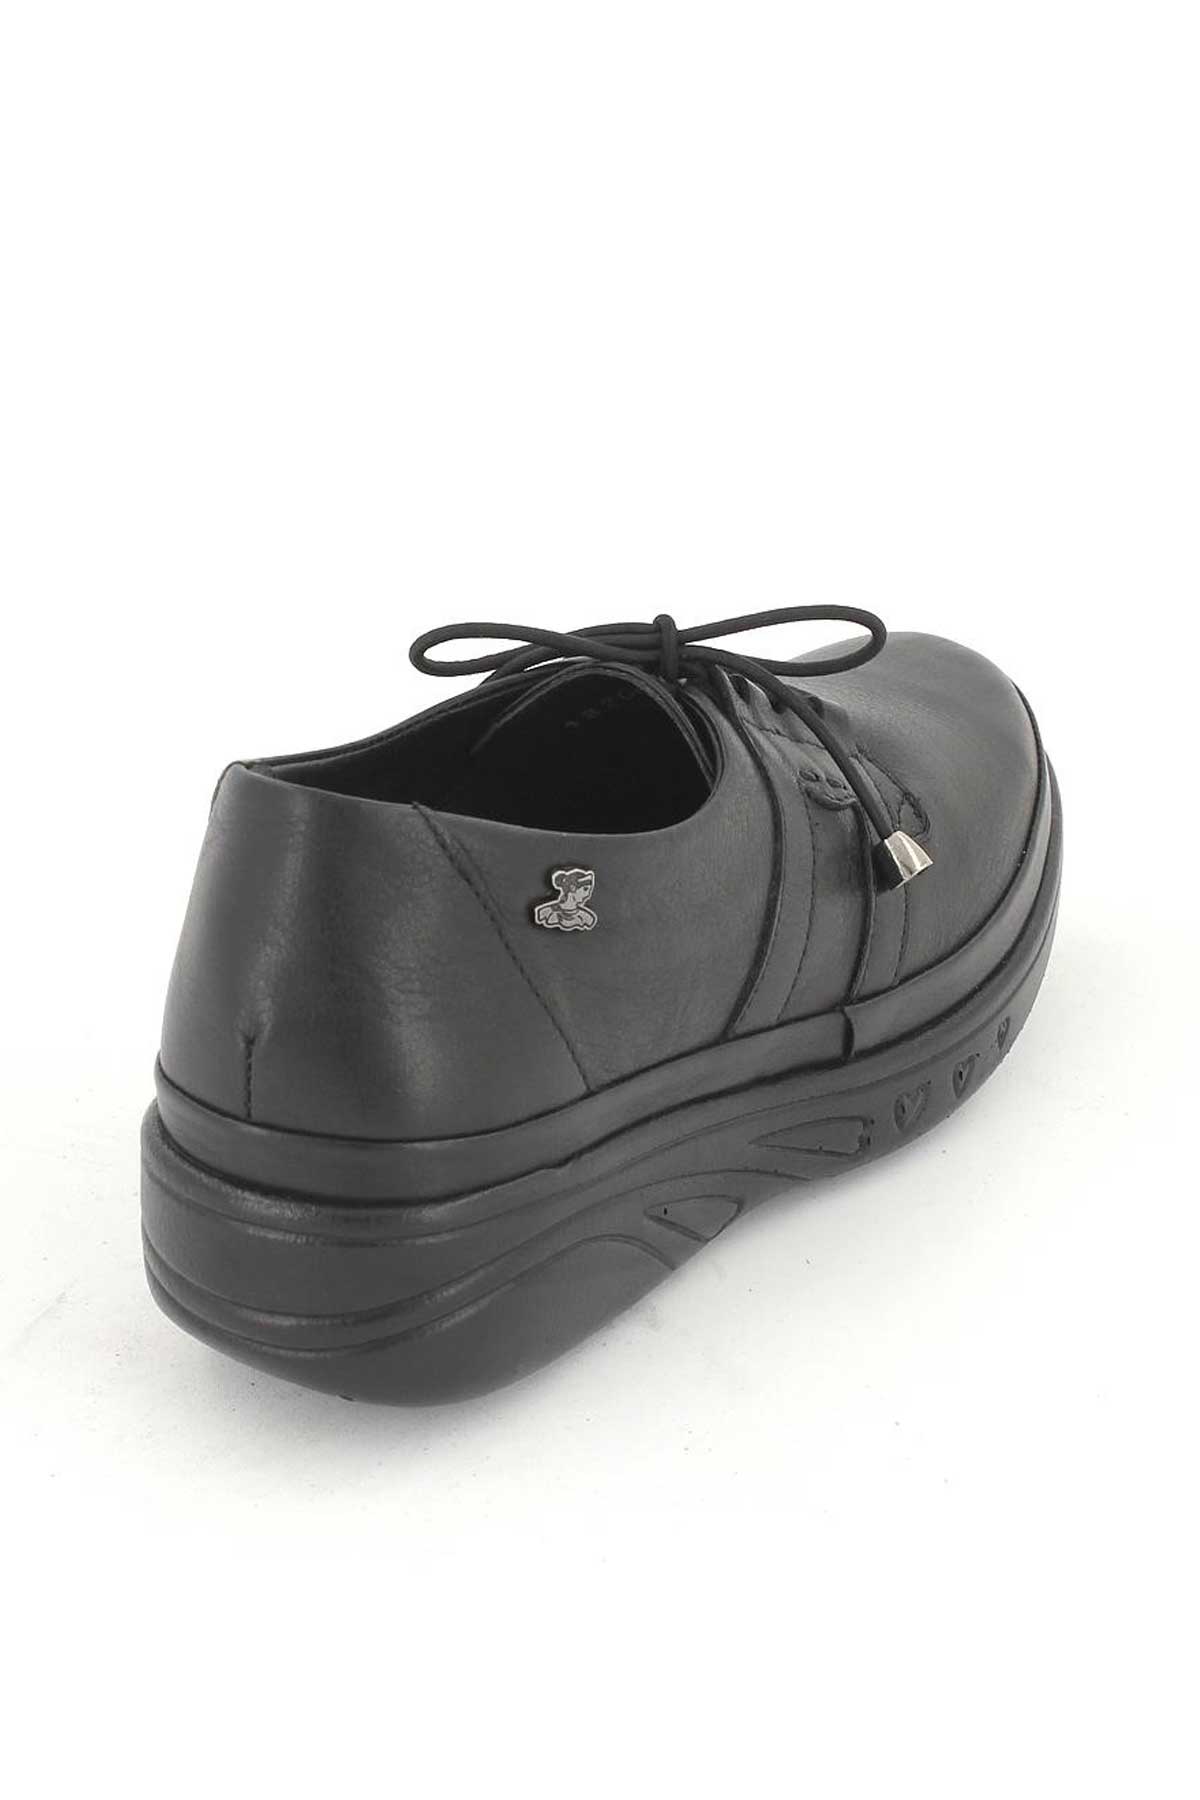 Kadın Airflow Deri Ayakkabı Siyah 1820519K - Thumbnail